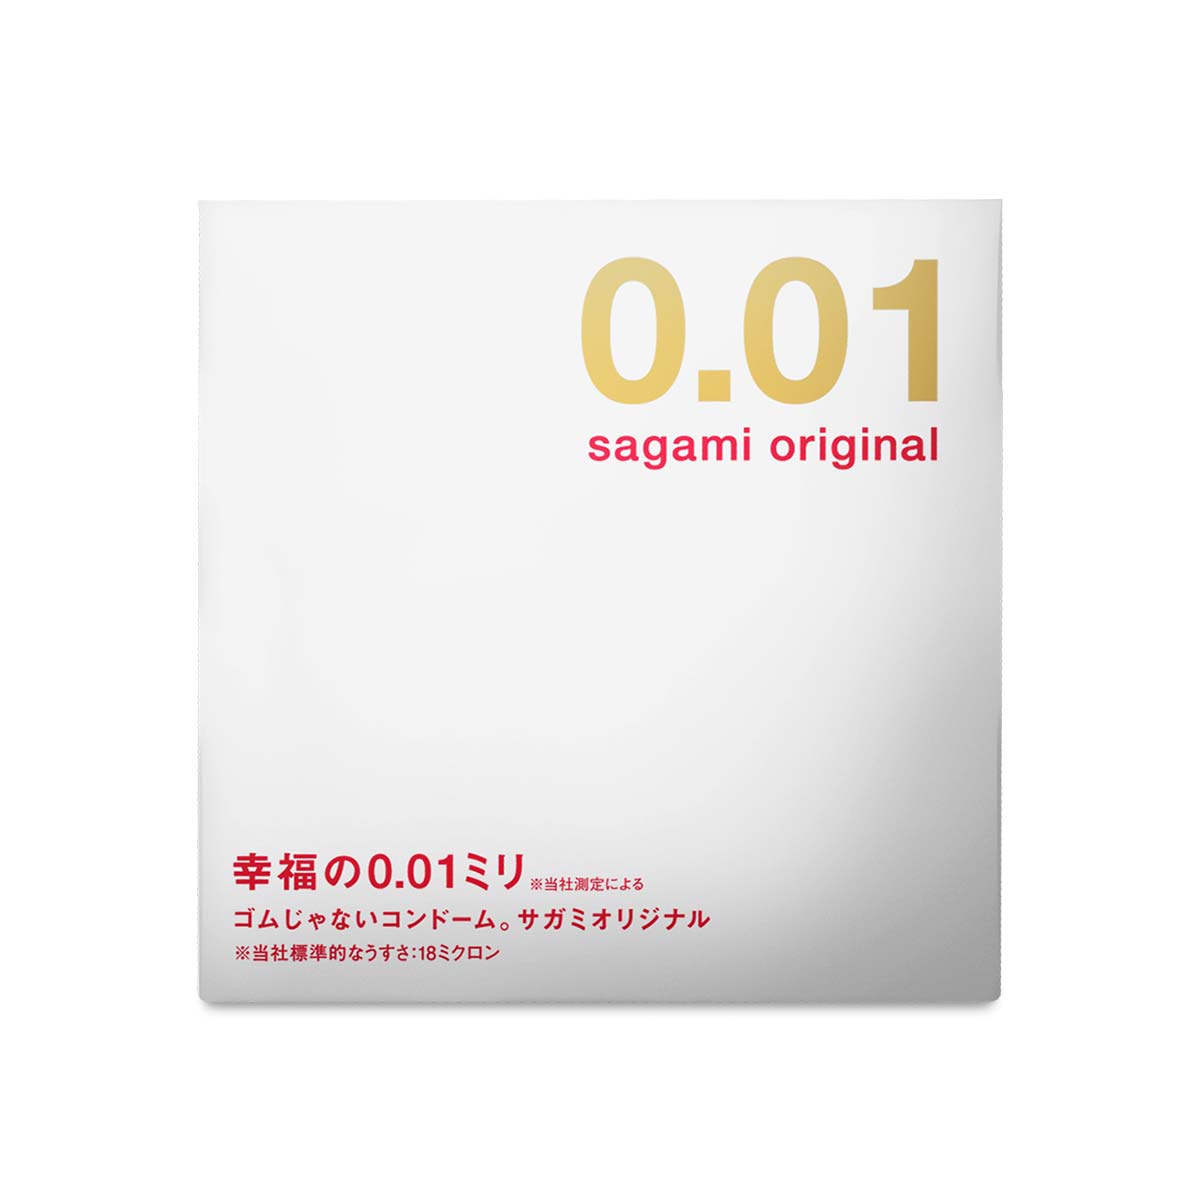 Sagami Original 0.01 1's Pack